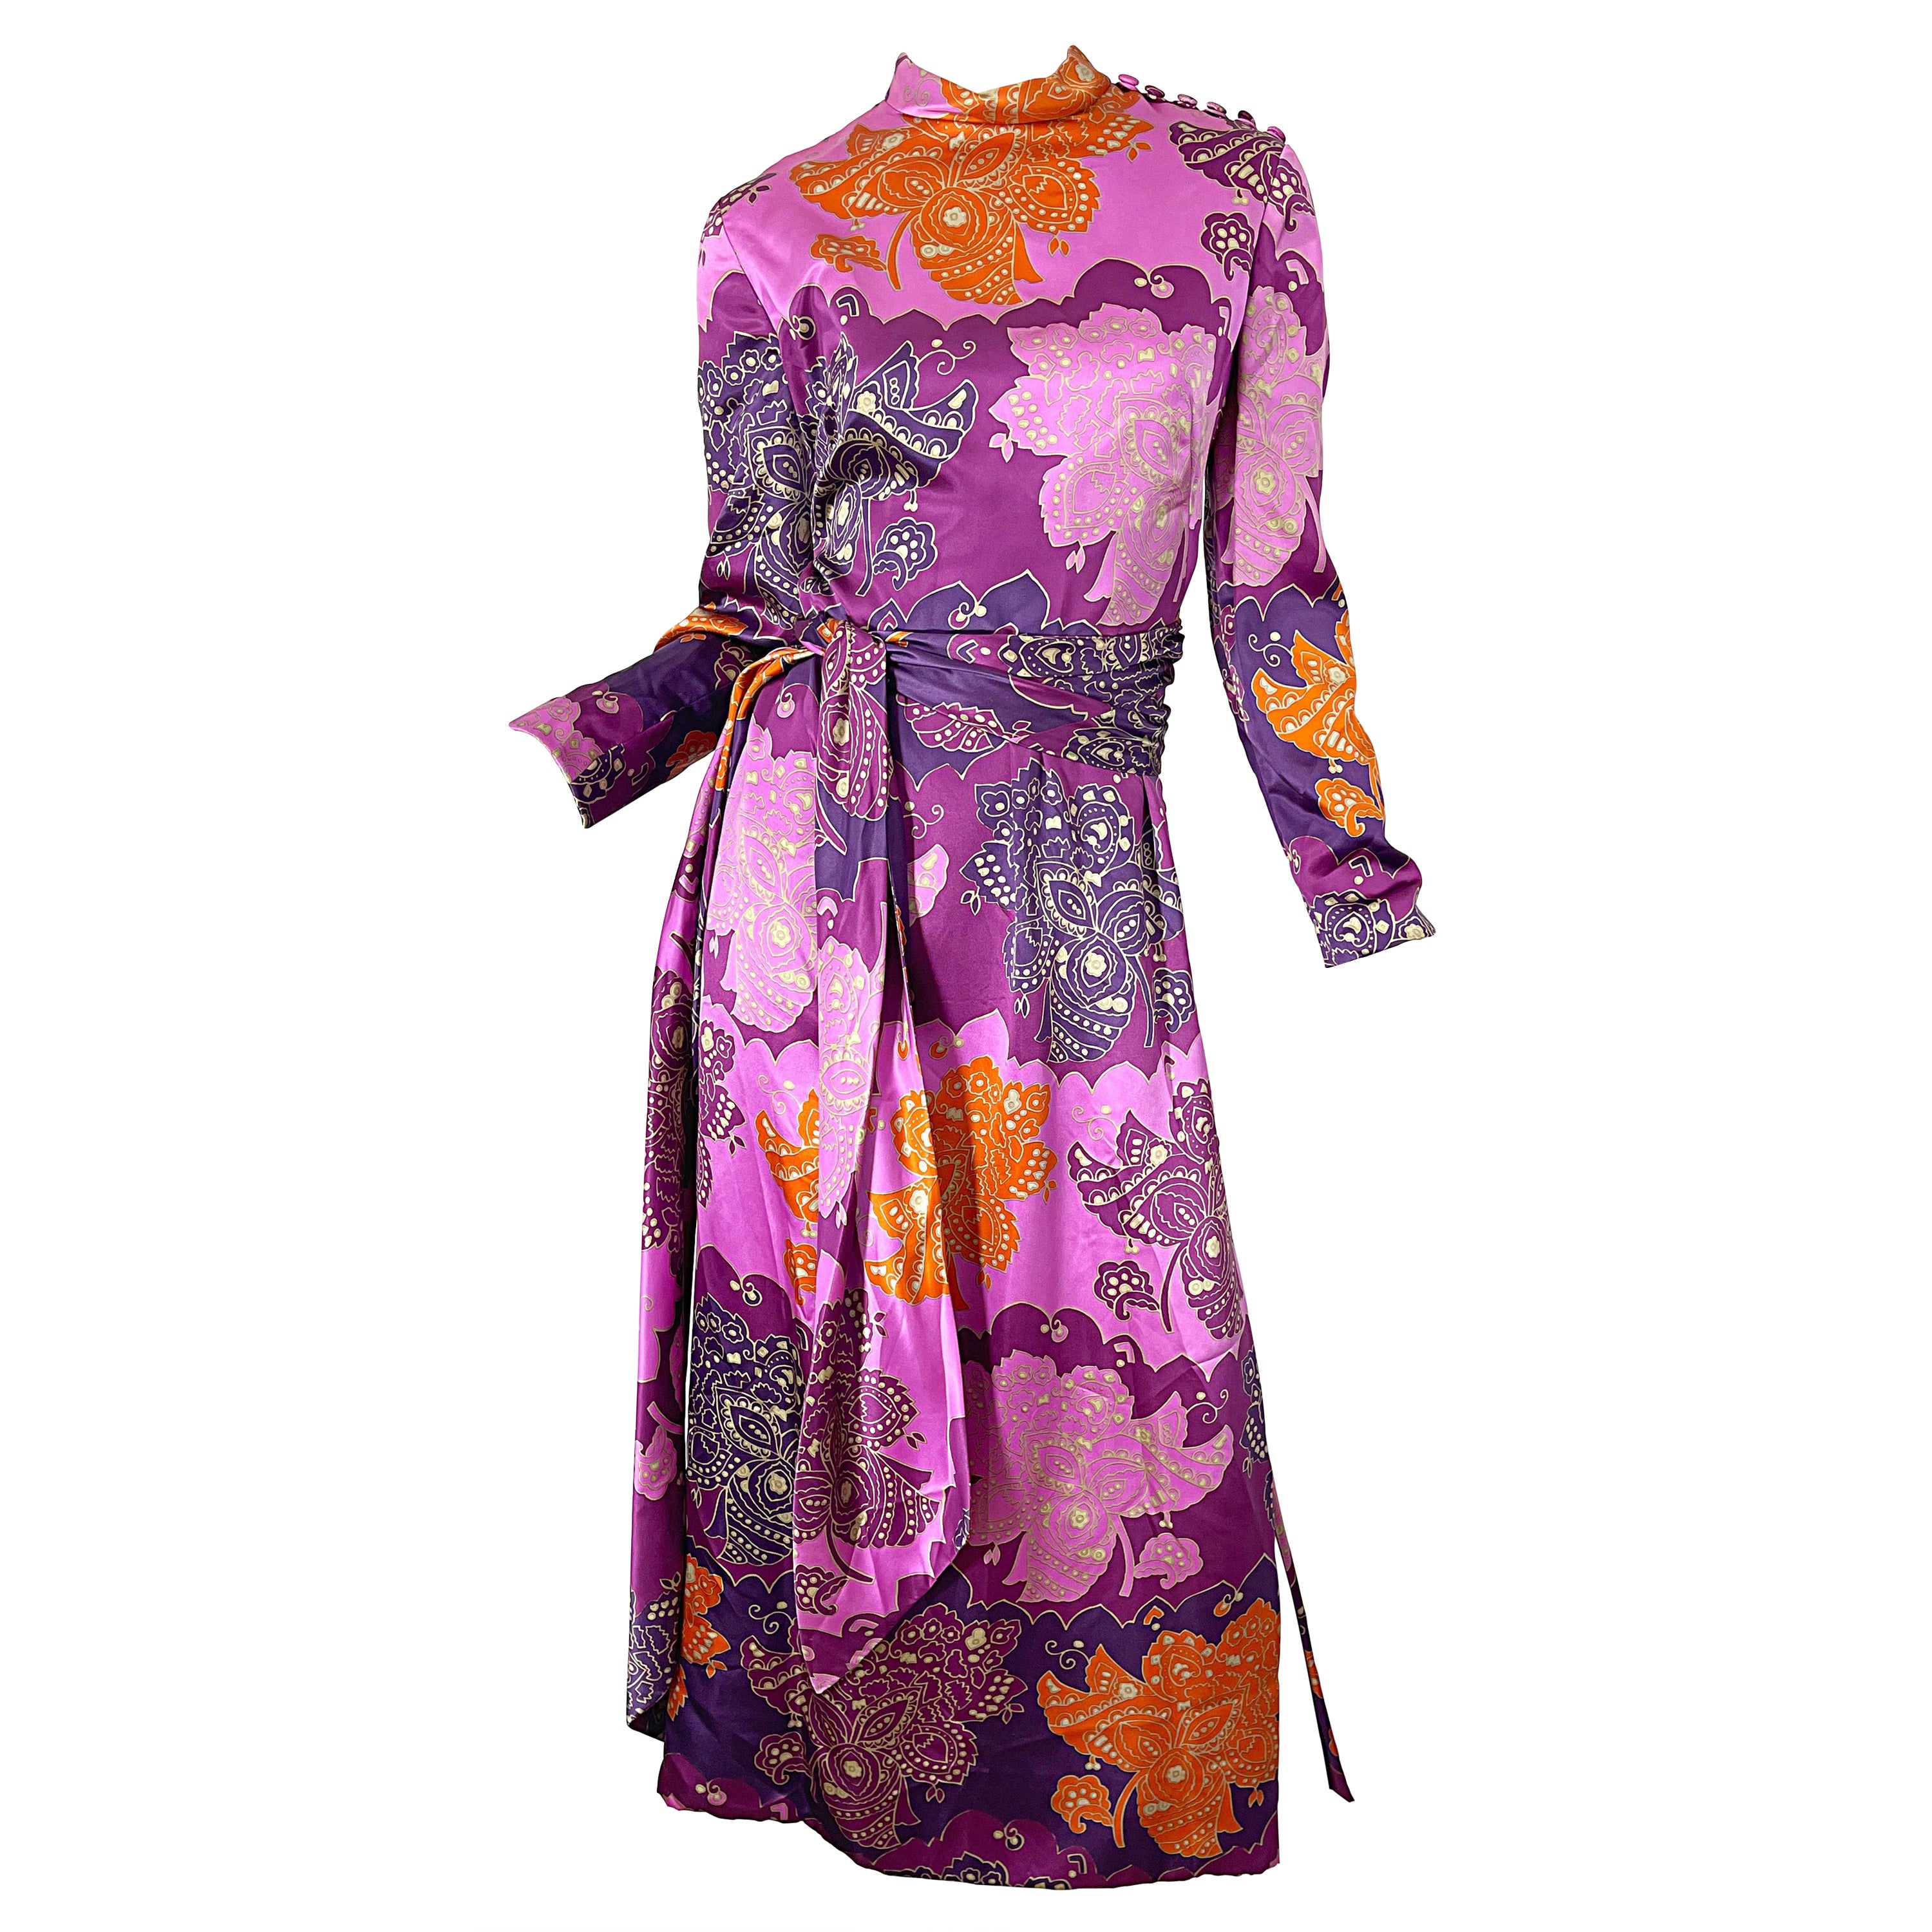 ADELE SIMPSON vintage dress  70s Adele Simpson dress  70s Purple dress  Vintage Adele Simpson Purple Silk Dress  fits M